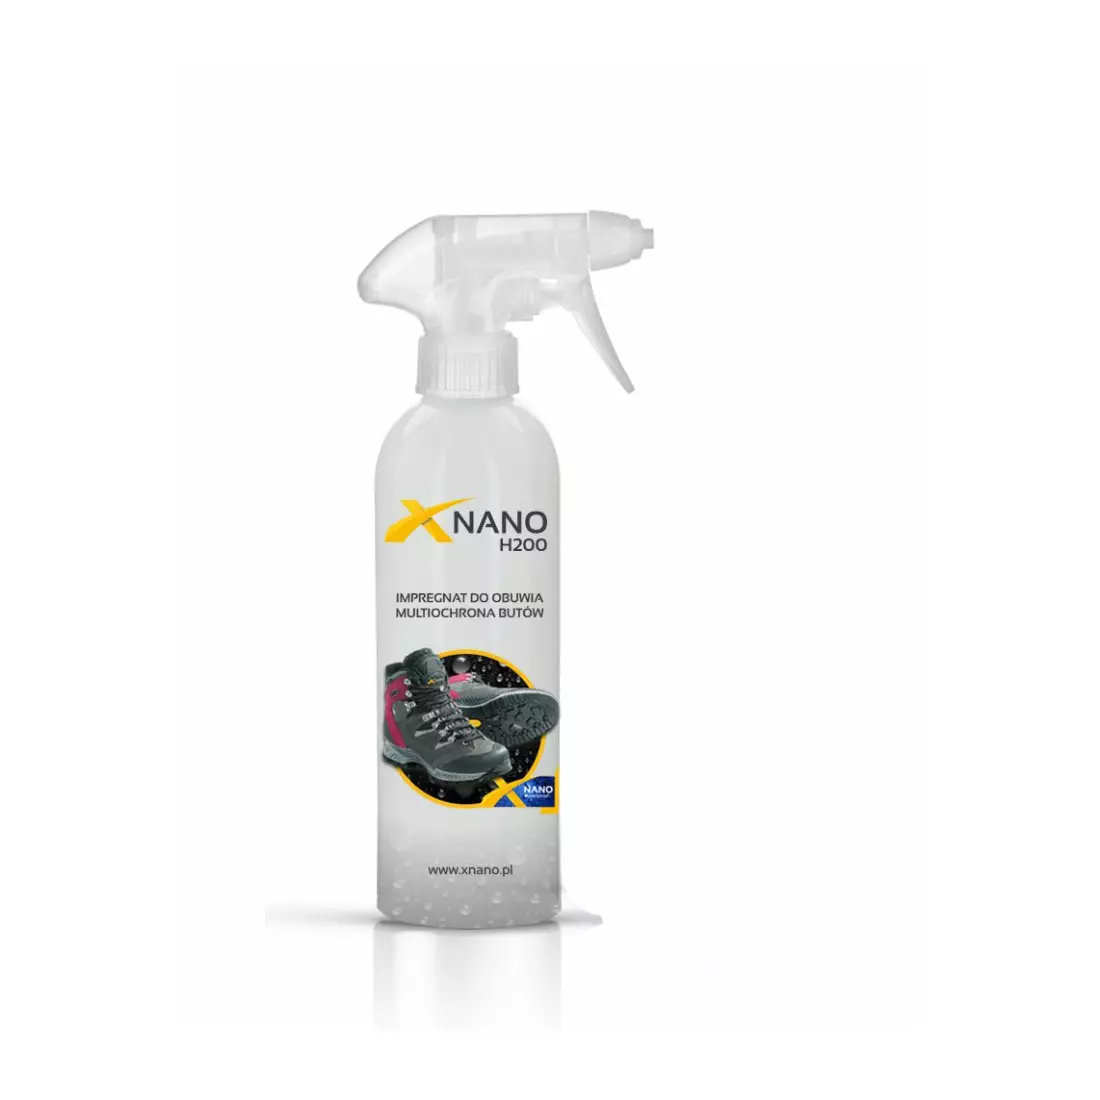 NANOBIZ - XNANO - H200 Multi-ochranná impregnace na boty, objem: 250 ml